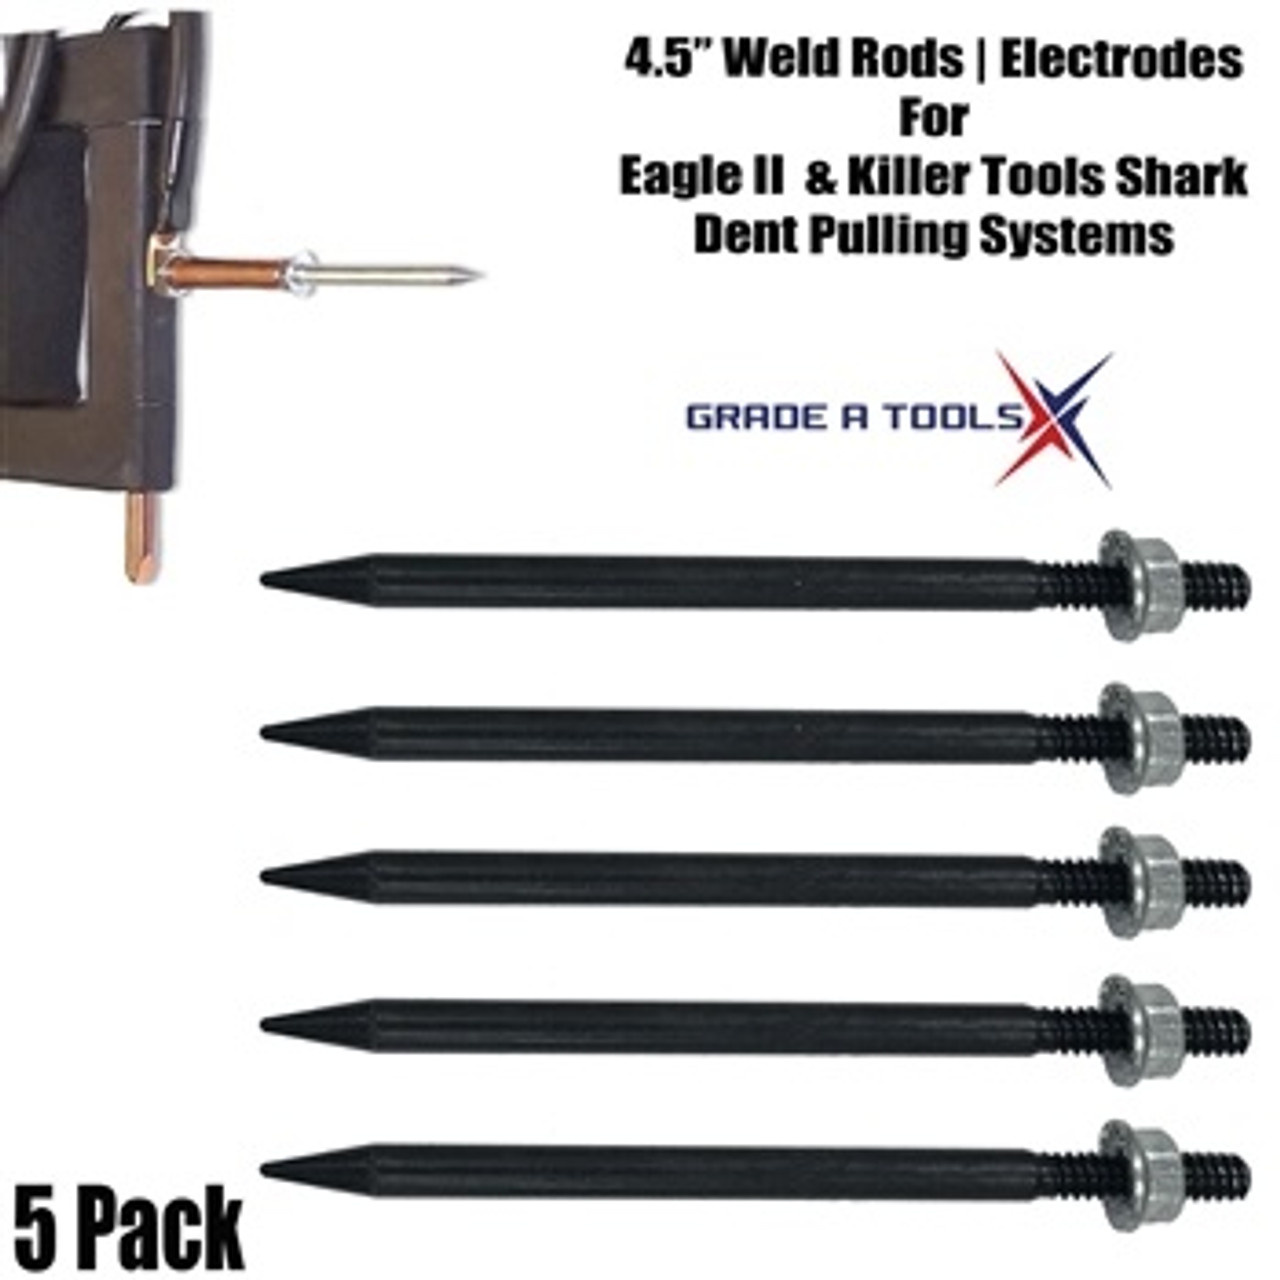 Weld Rod, Electrode 4.5" 5 Pack - Eagle II & Killer Tools Shark-1